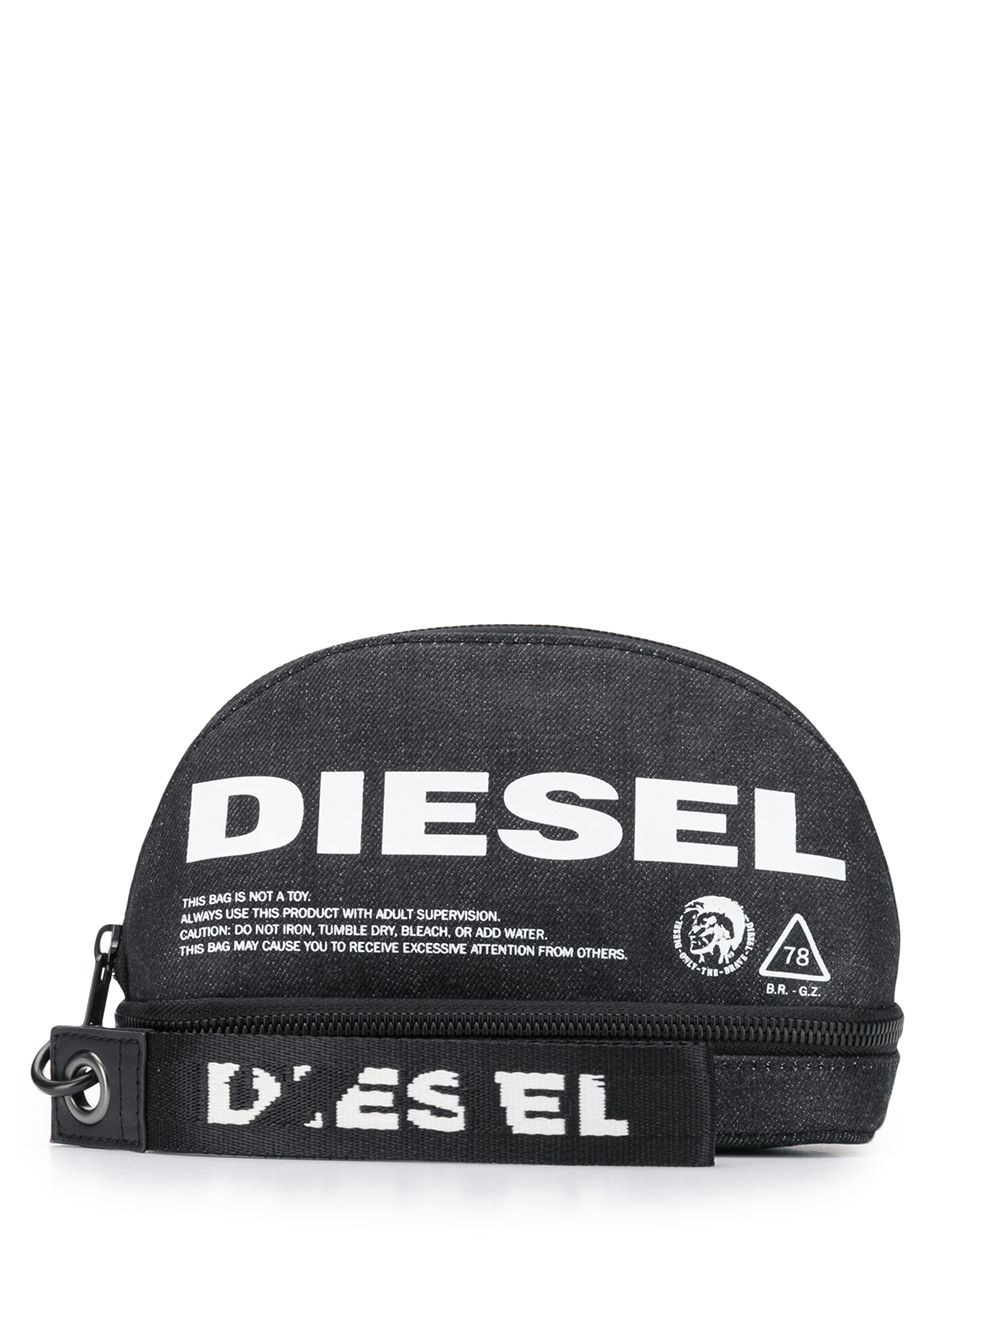 фото Diesel косметичка new d-easy на молнии